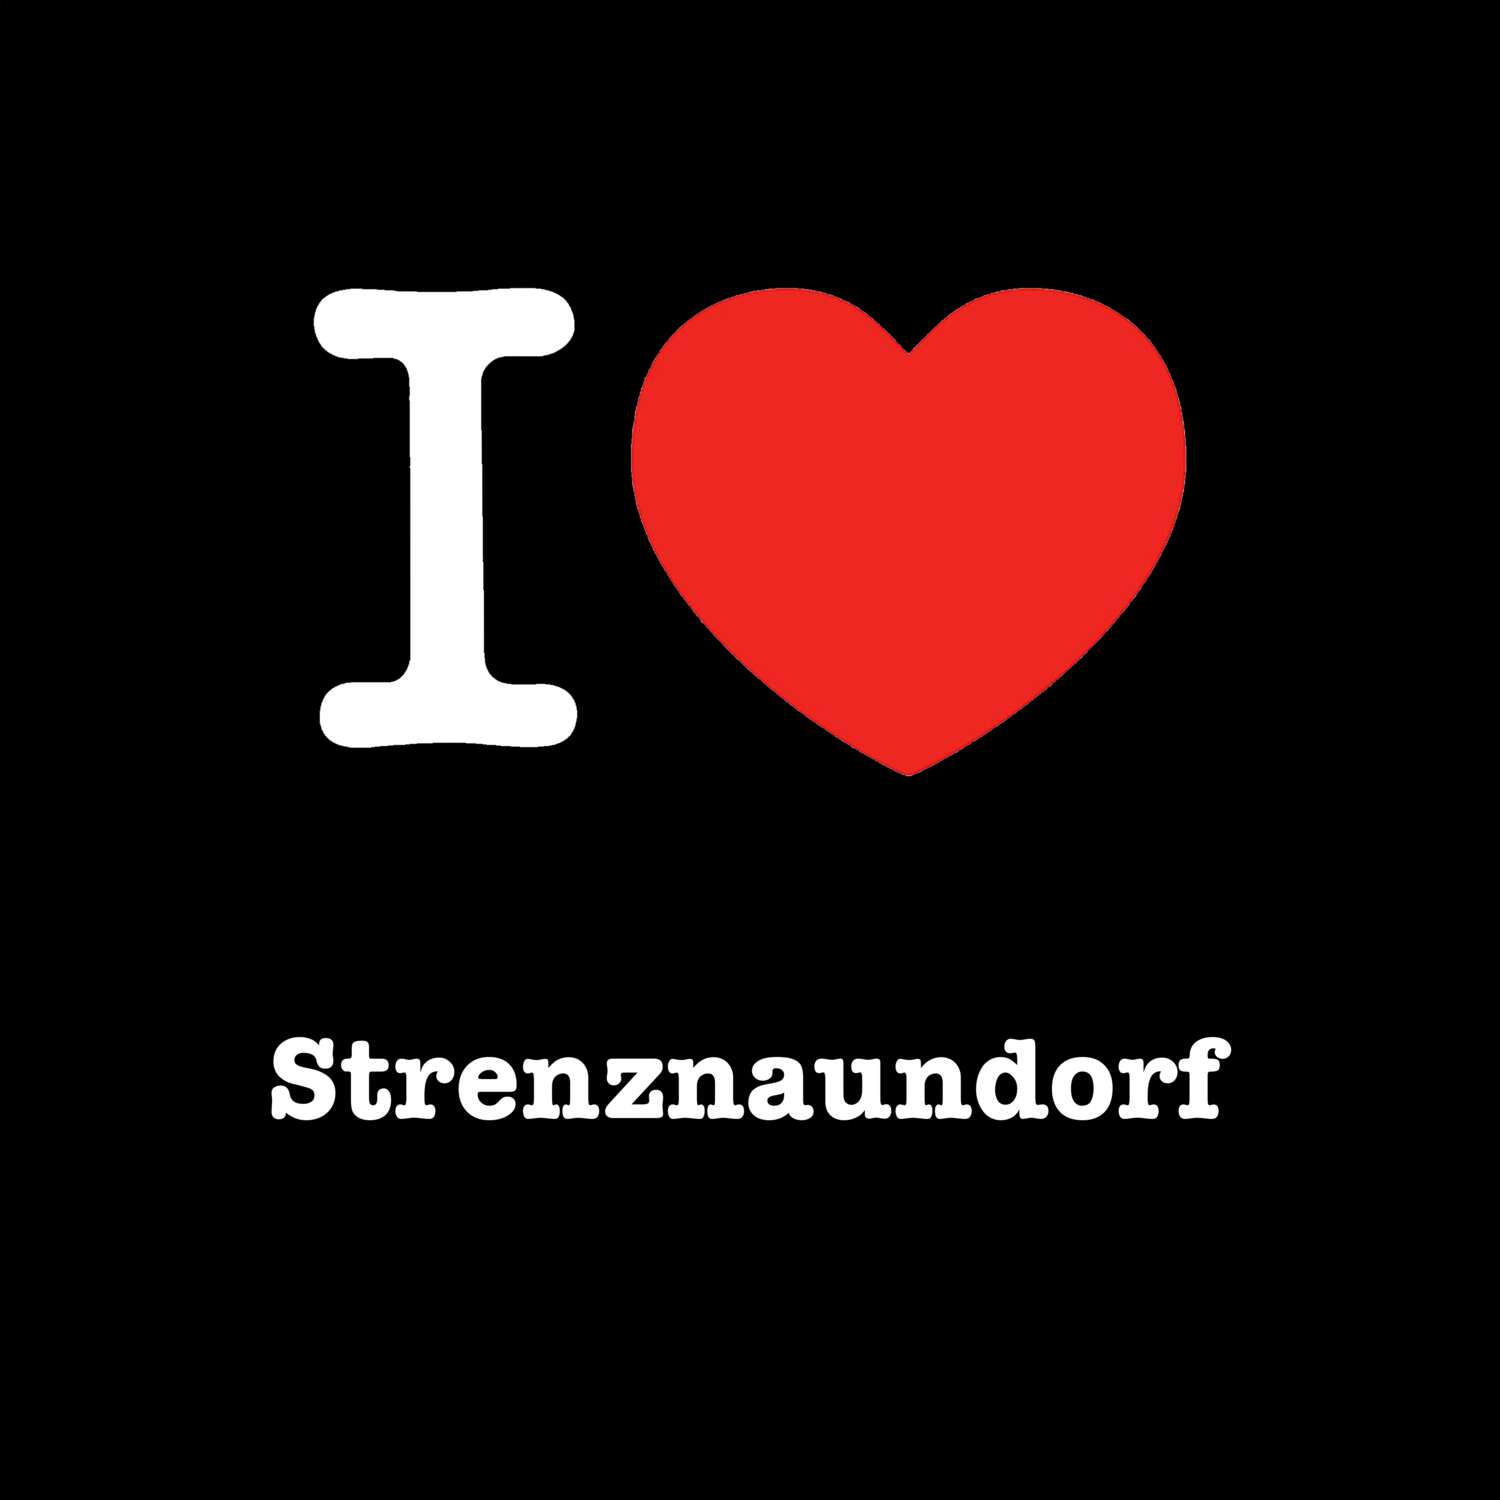 Strenznaundorf T-Shirt »I love«